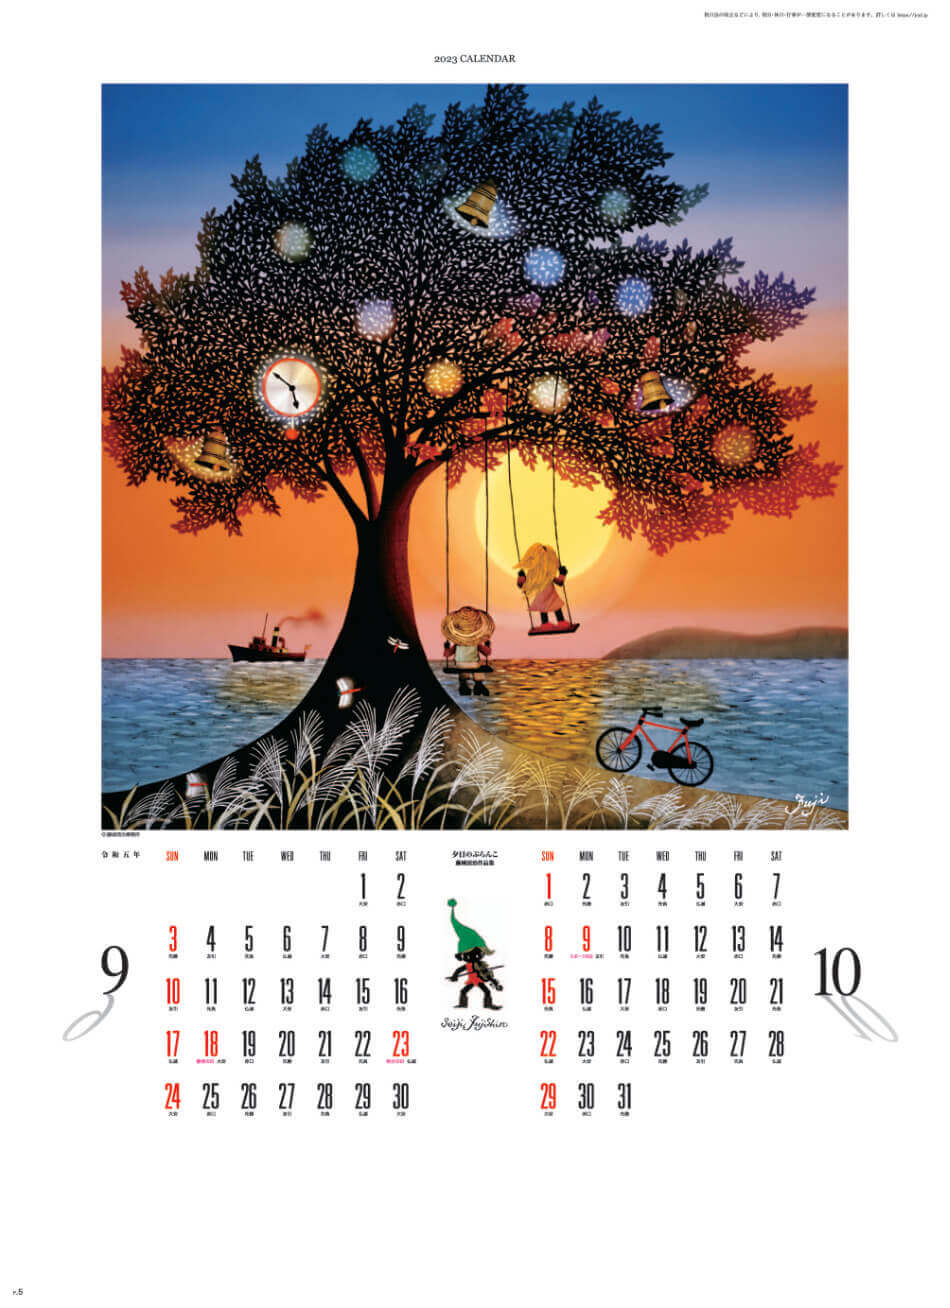 9/10月 夕日のブランコ 遠い日の風景から(影絵) 藤城清治 2023年カレンダーの画像